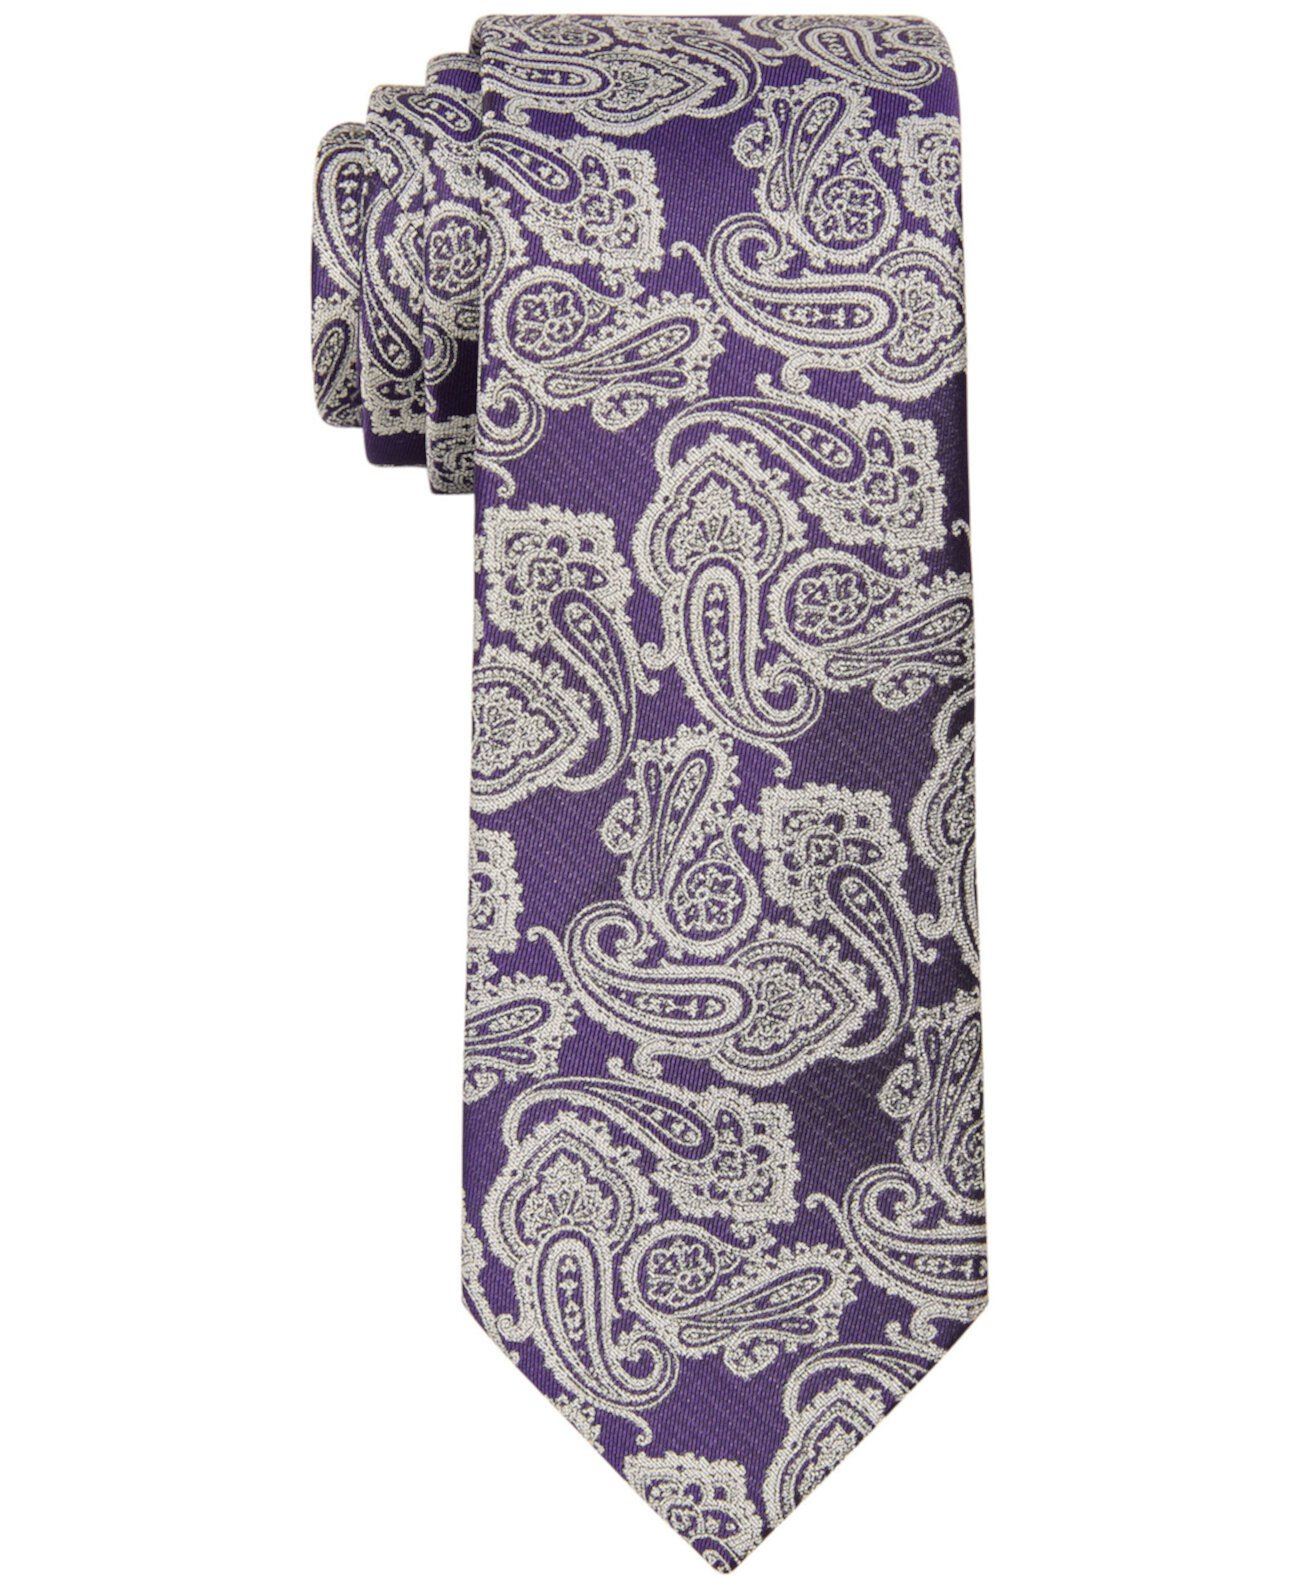 Мужской галстук с крупным узором пейсли Ralph Lauren